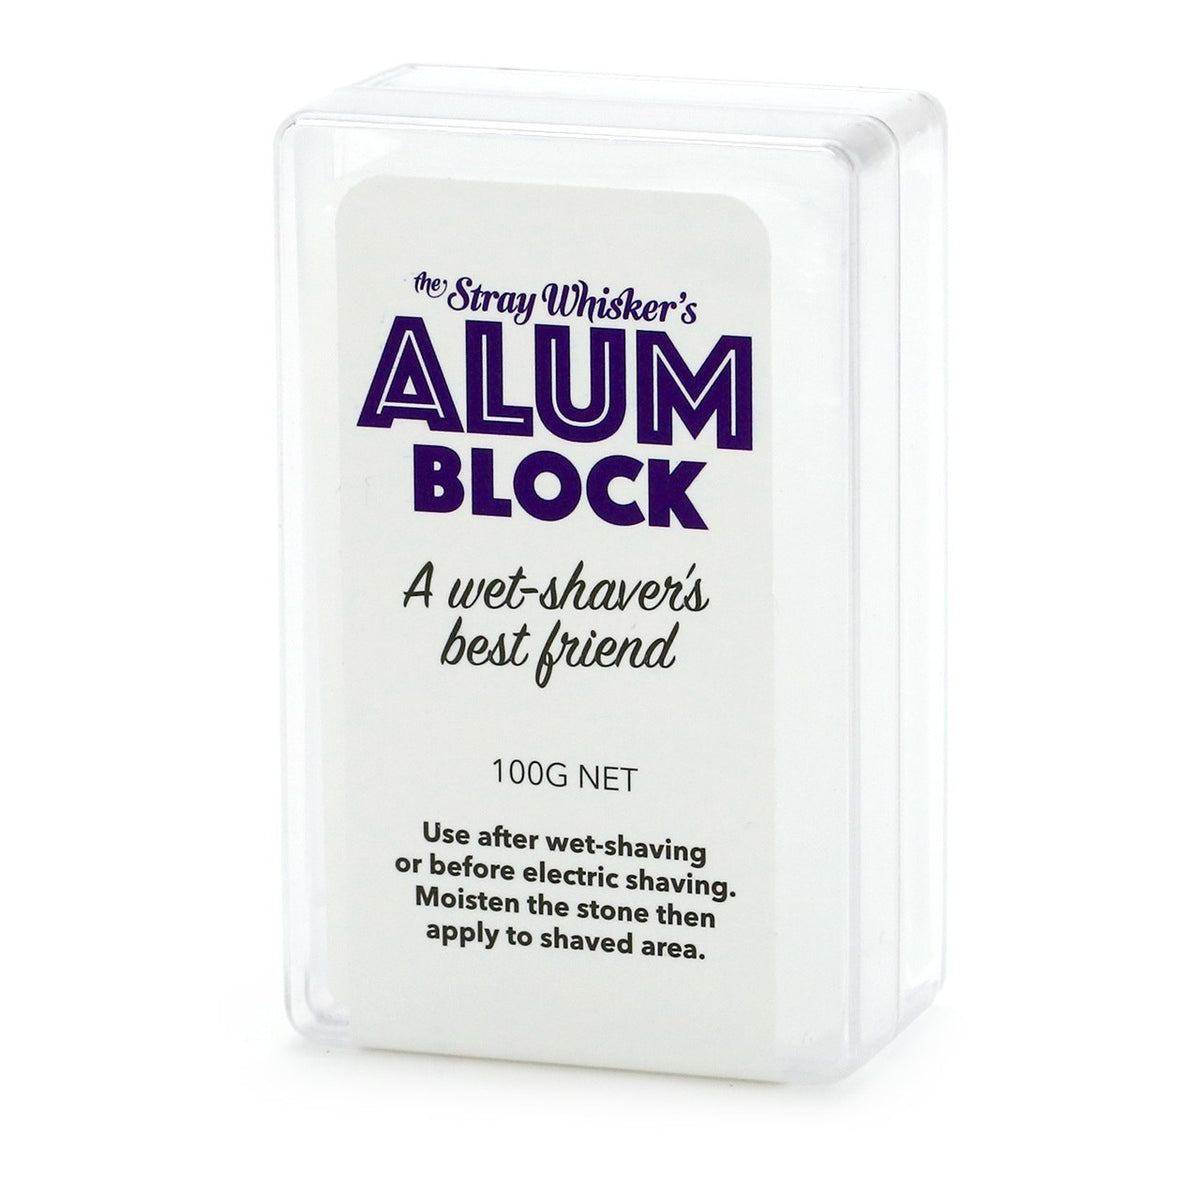 Alum Block - The Stray Whisker